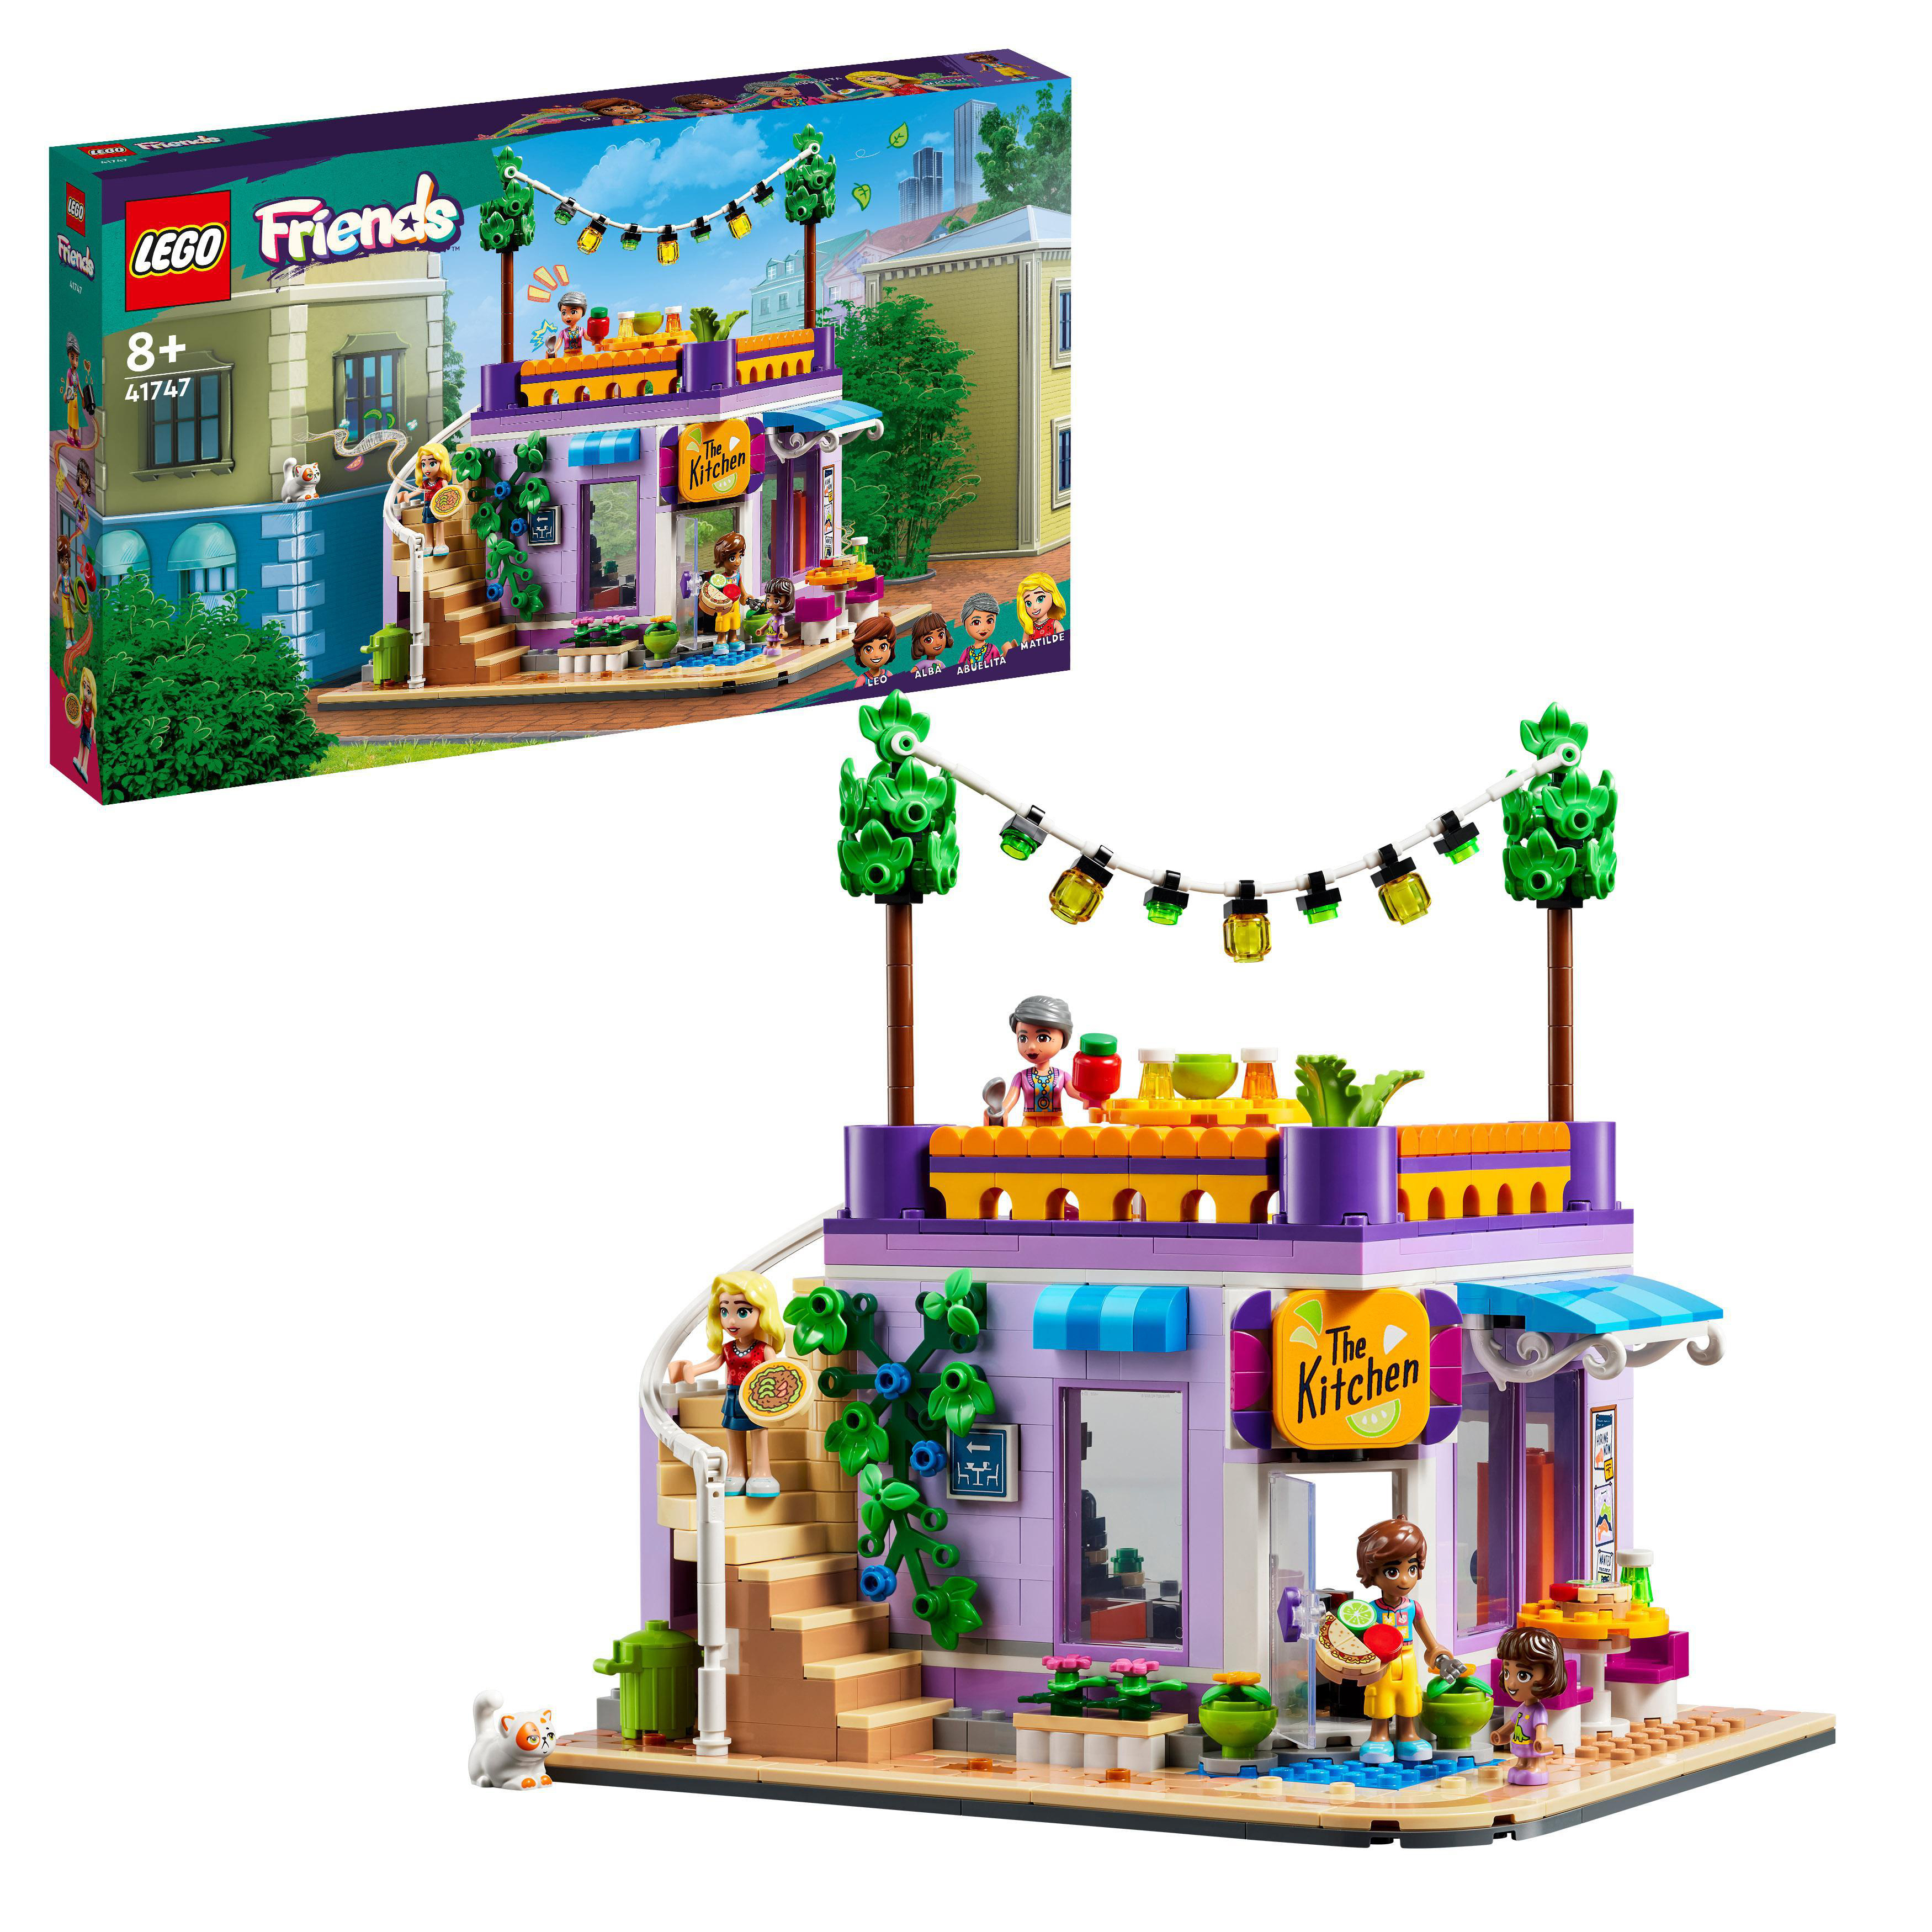 LEGO Friends 41747 Heartlake City Mehrfarbig Gemeinschaftsküche Bausatz